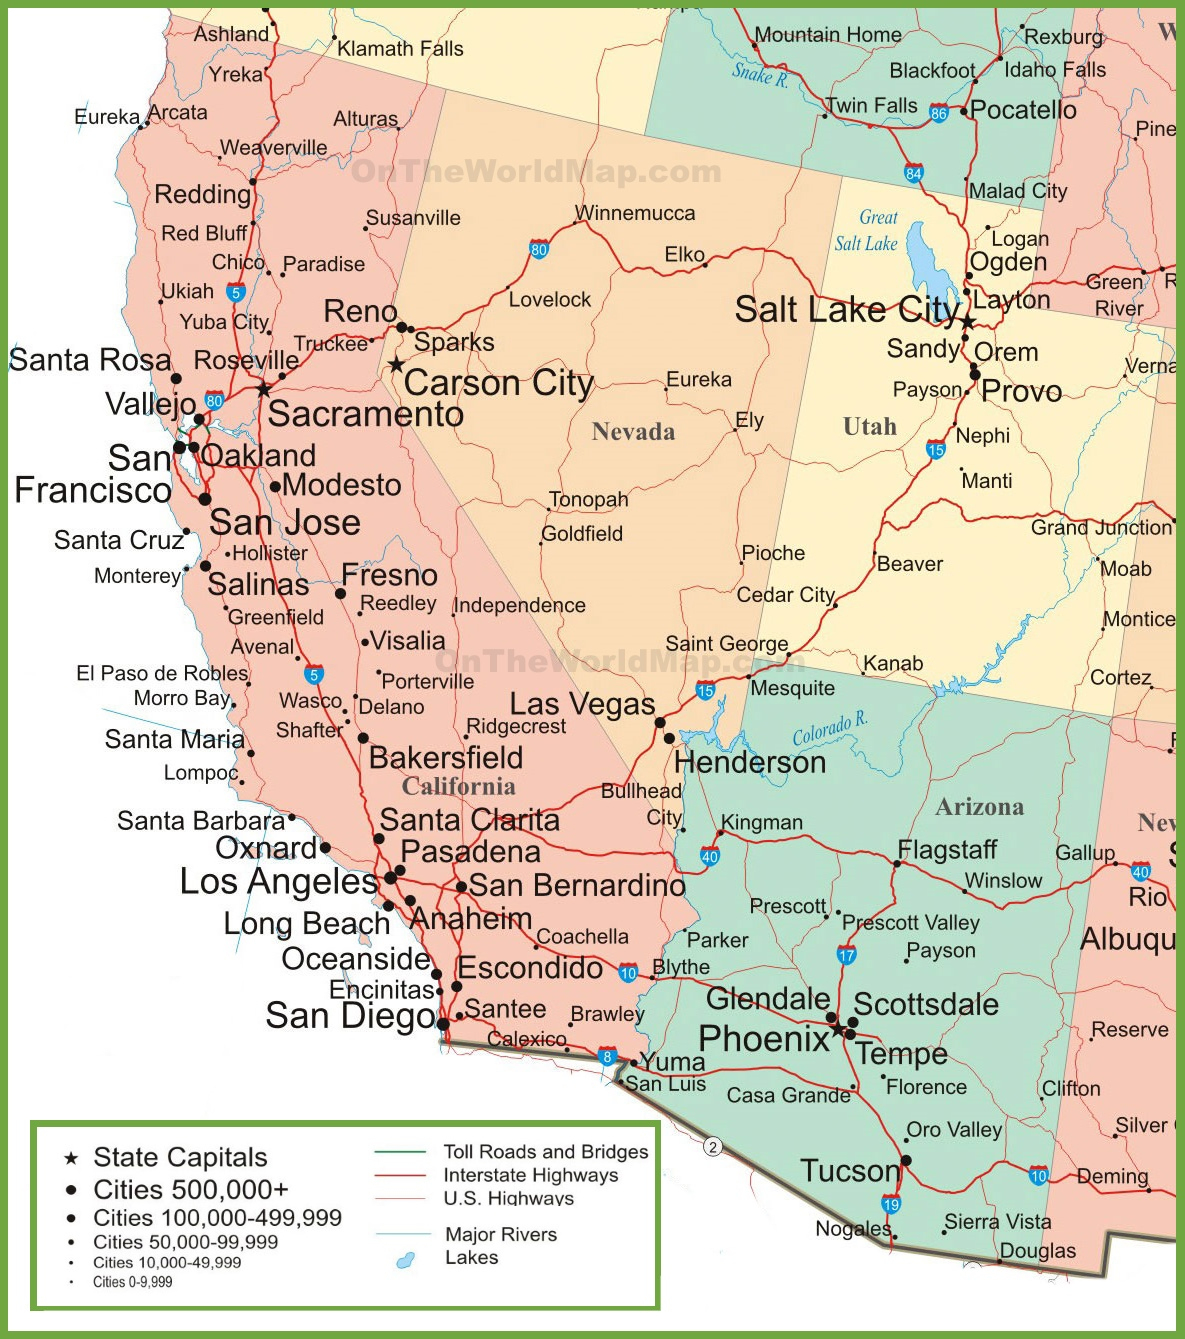 Map Of Arizona, California, Nevada And Utah - Road Map Of California And Nevada